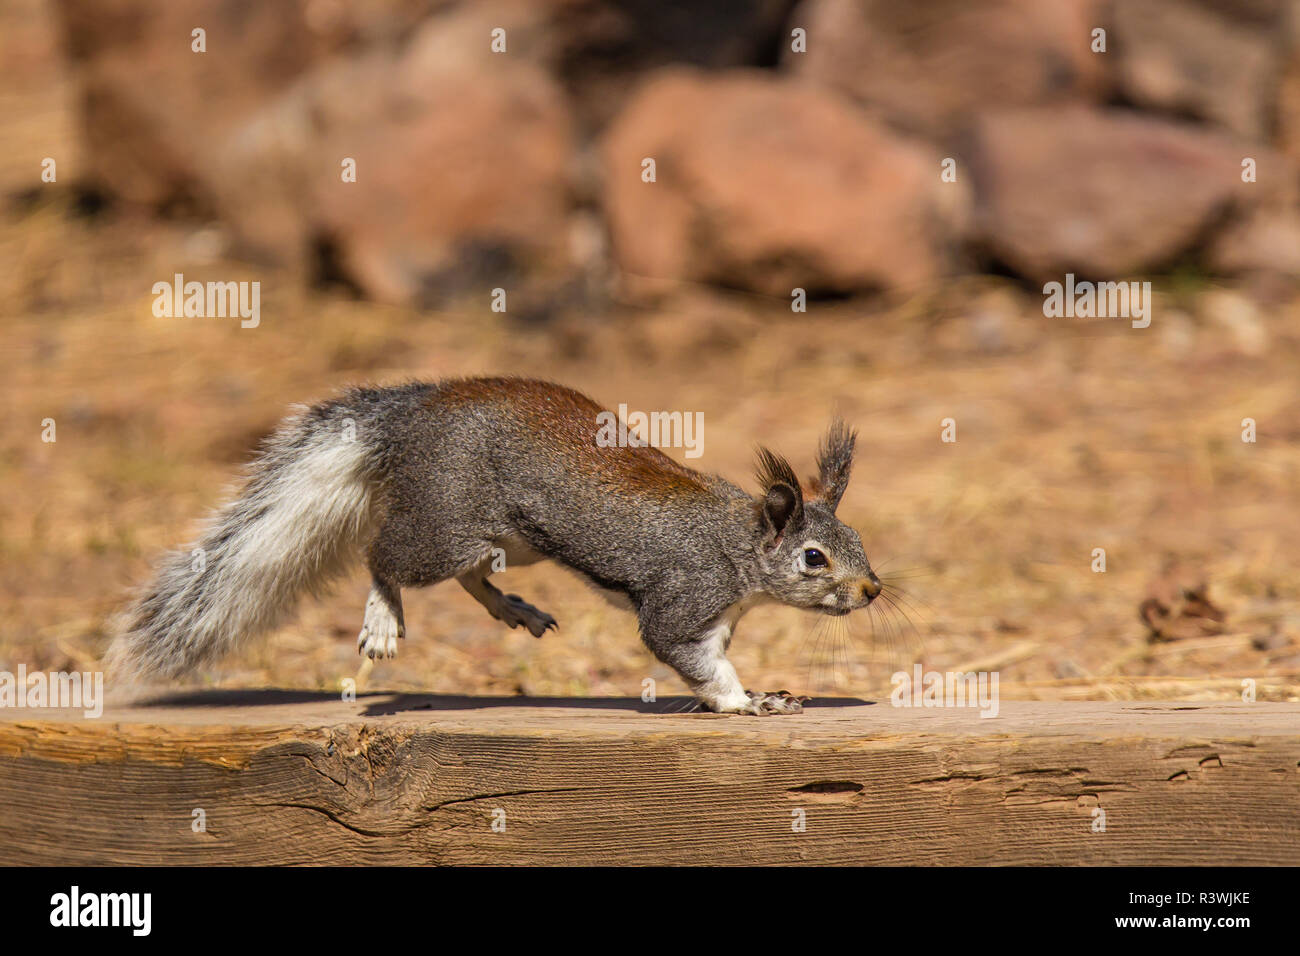 USA, Arizona. Kaibab squirrel (Sciurus aberti kaibabensis) Stock Photo